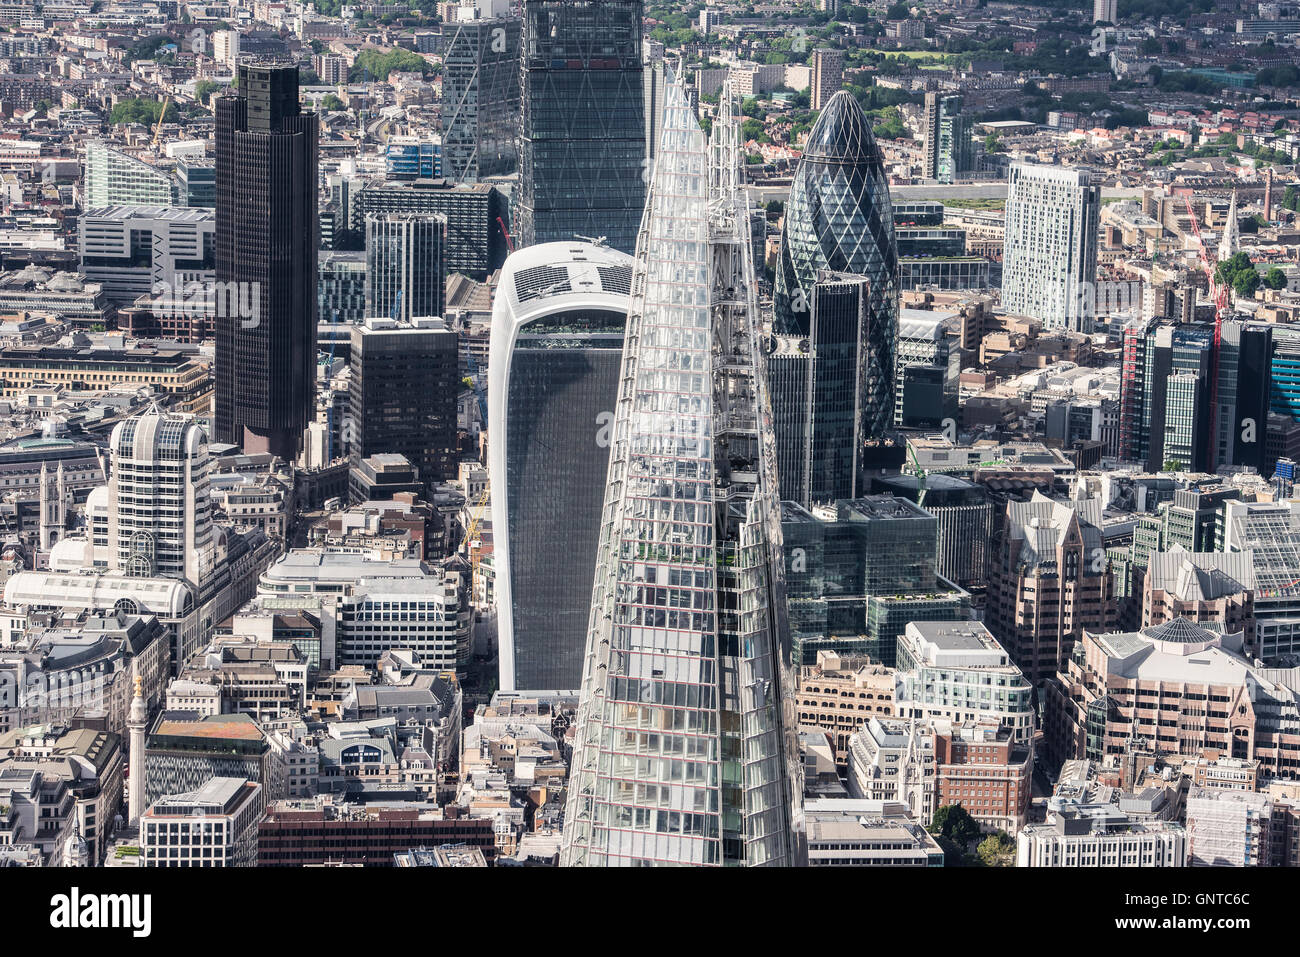 Città di Londra vista dall'elicottero, Shard e cetriolino in vista Foto Stock